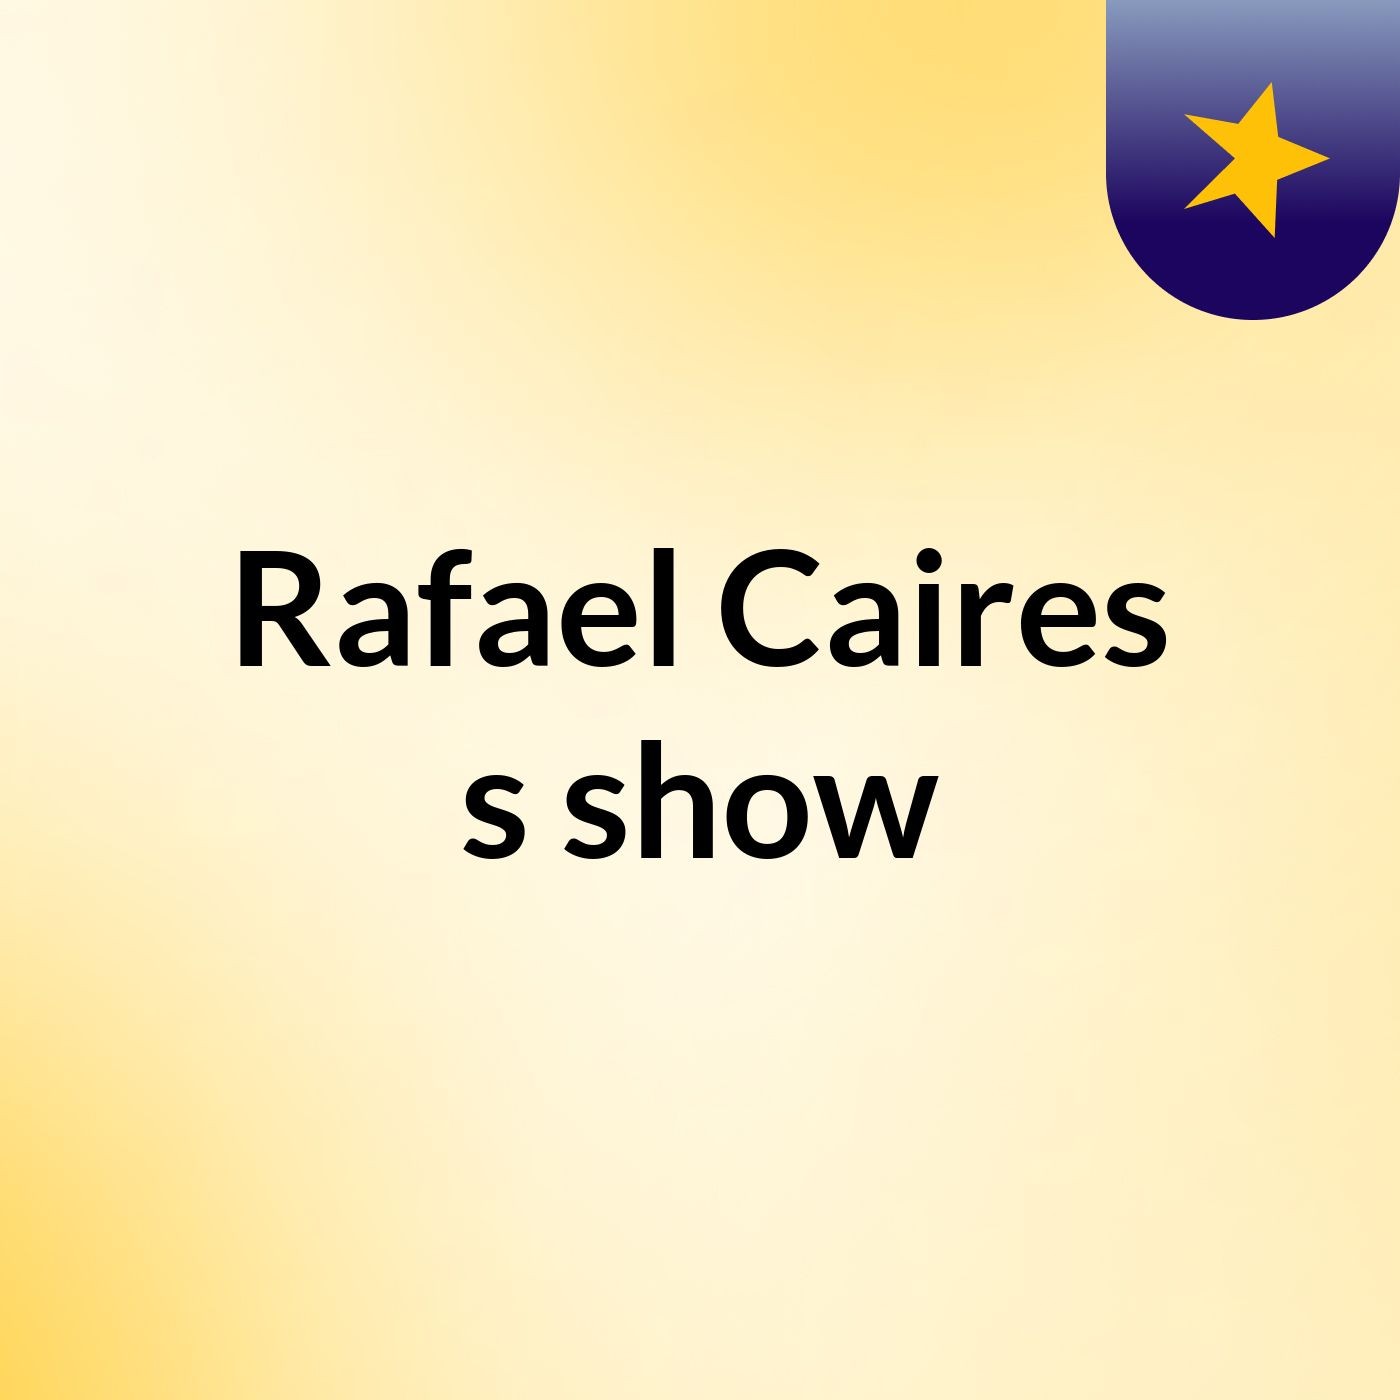 Rafael Caires's show